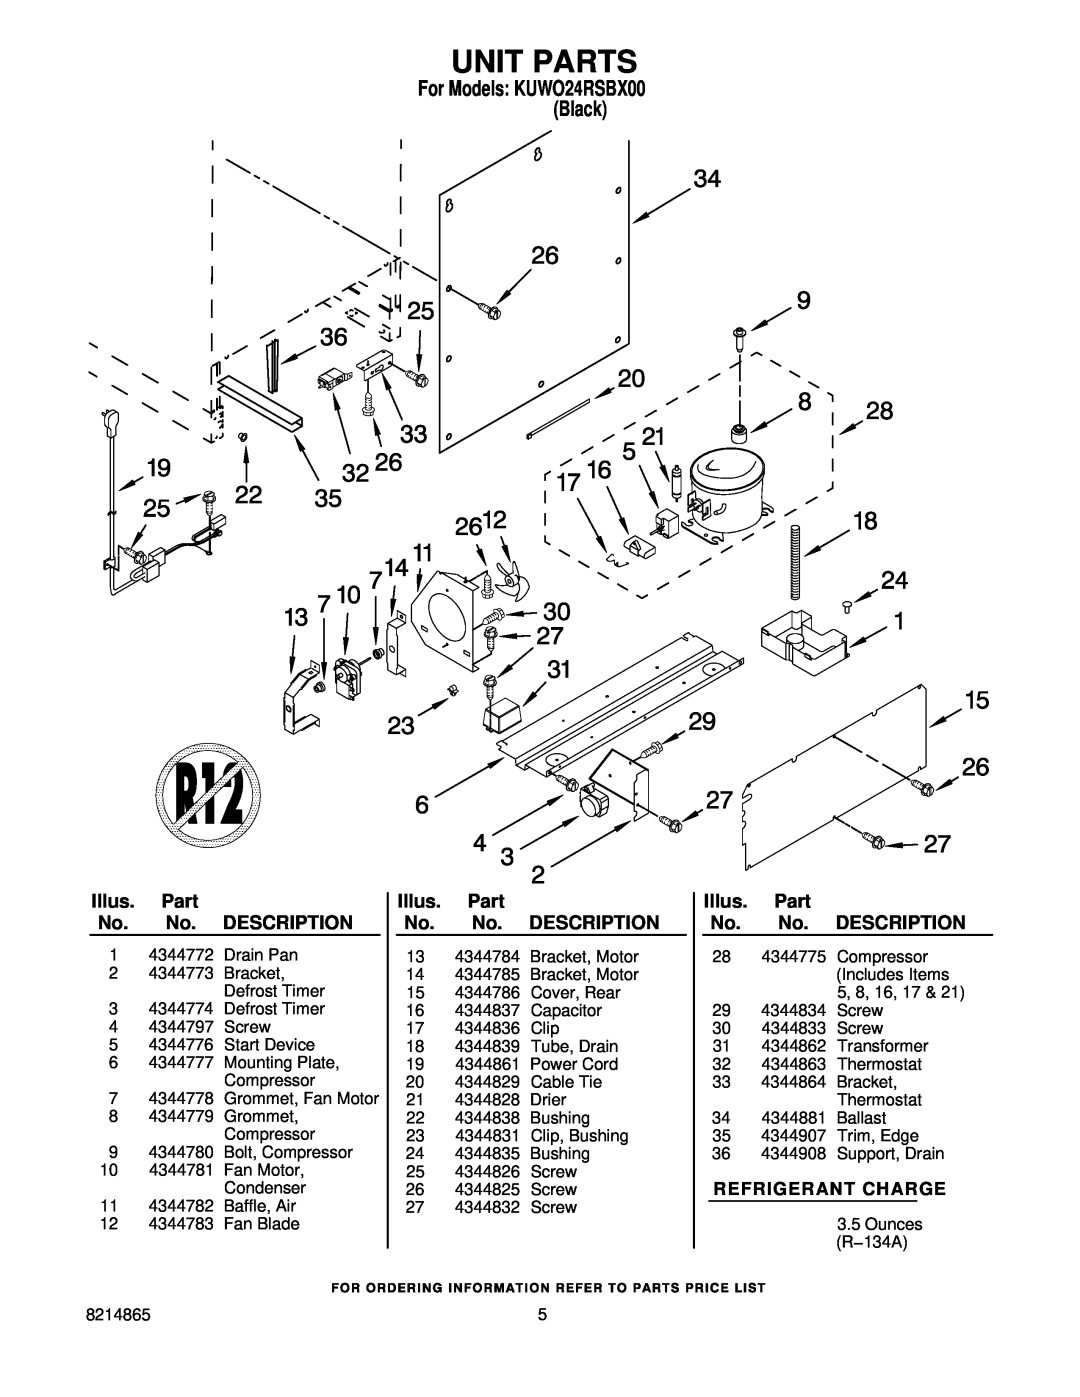 KitchenAid KUWO24RSBX00 manual Unit Parts, Refrigerant Charge, Illus. Part No. No. DESCRIPTION 